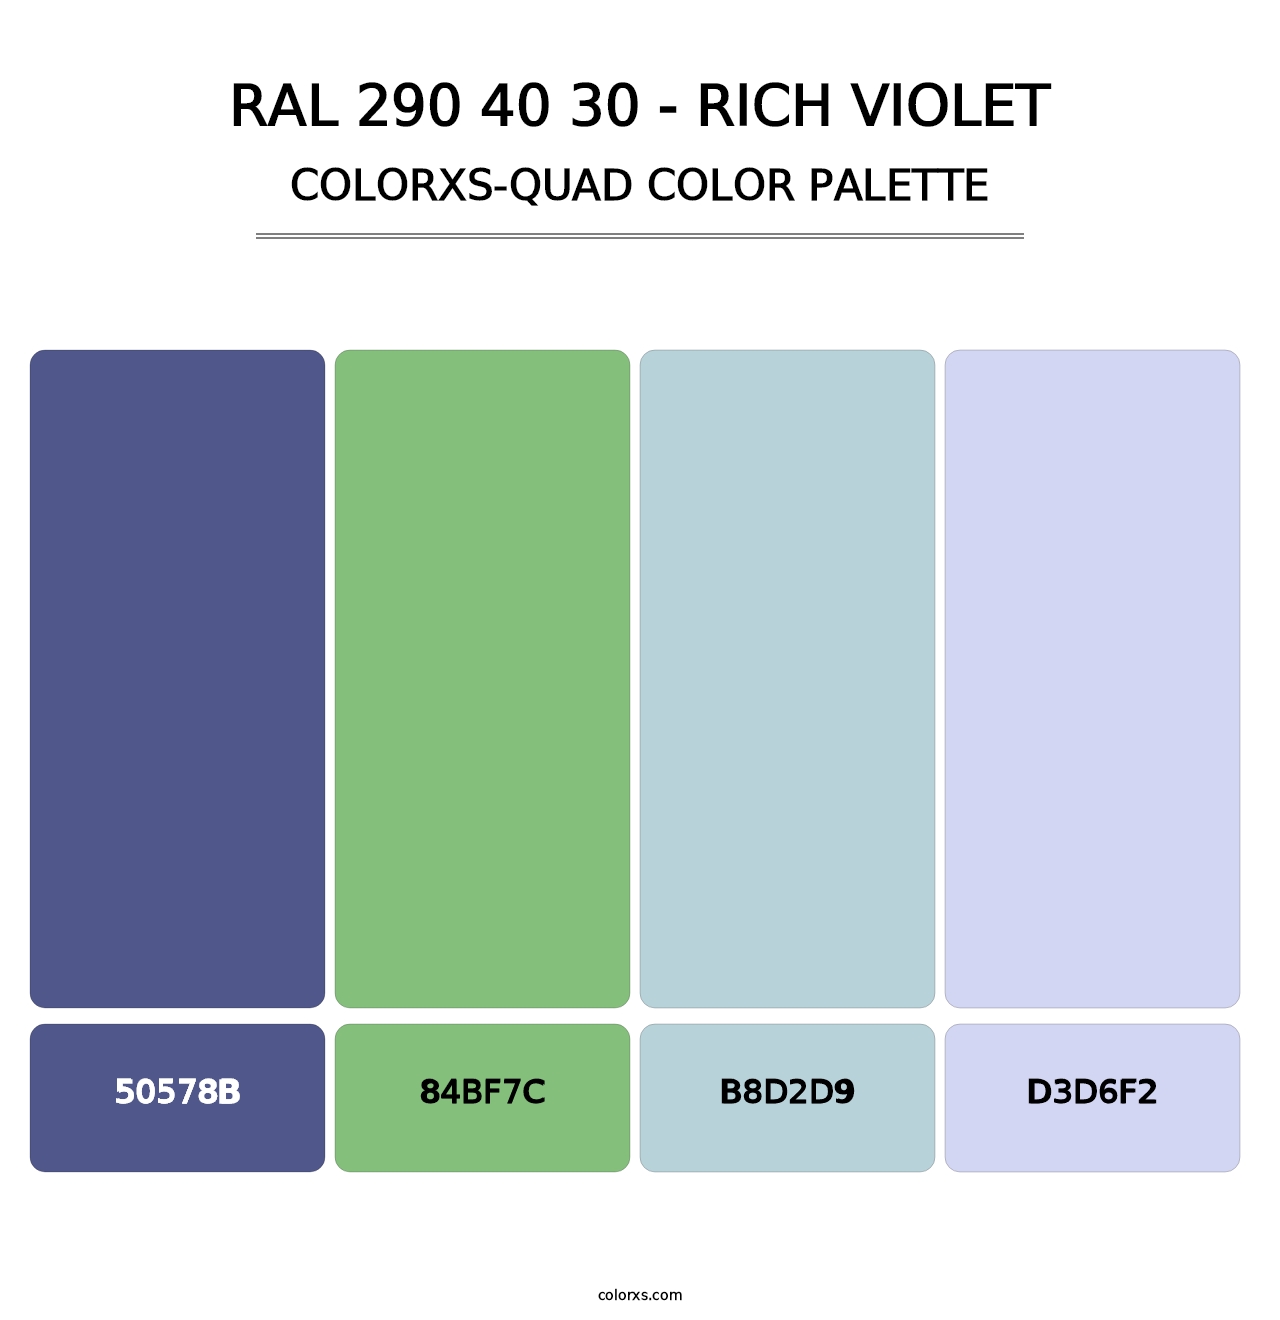 RAL 290 40 30 - Rich Violet - Colorxs Quad Palette